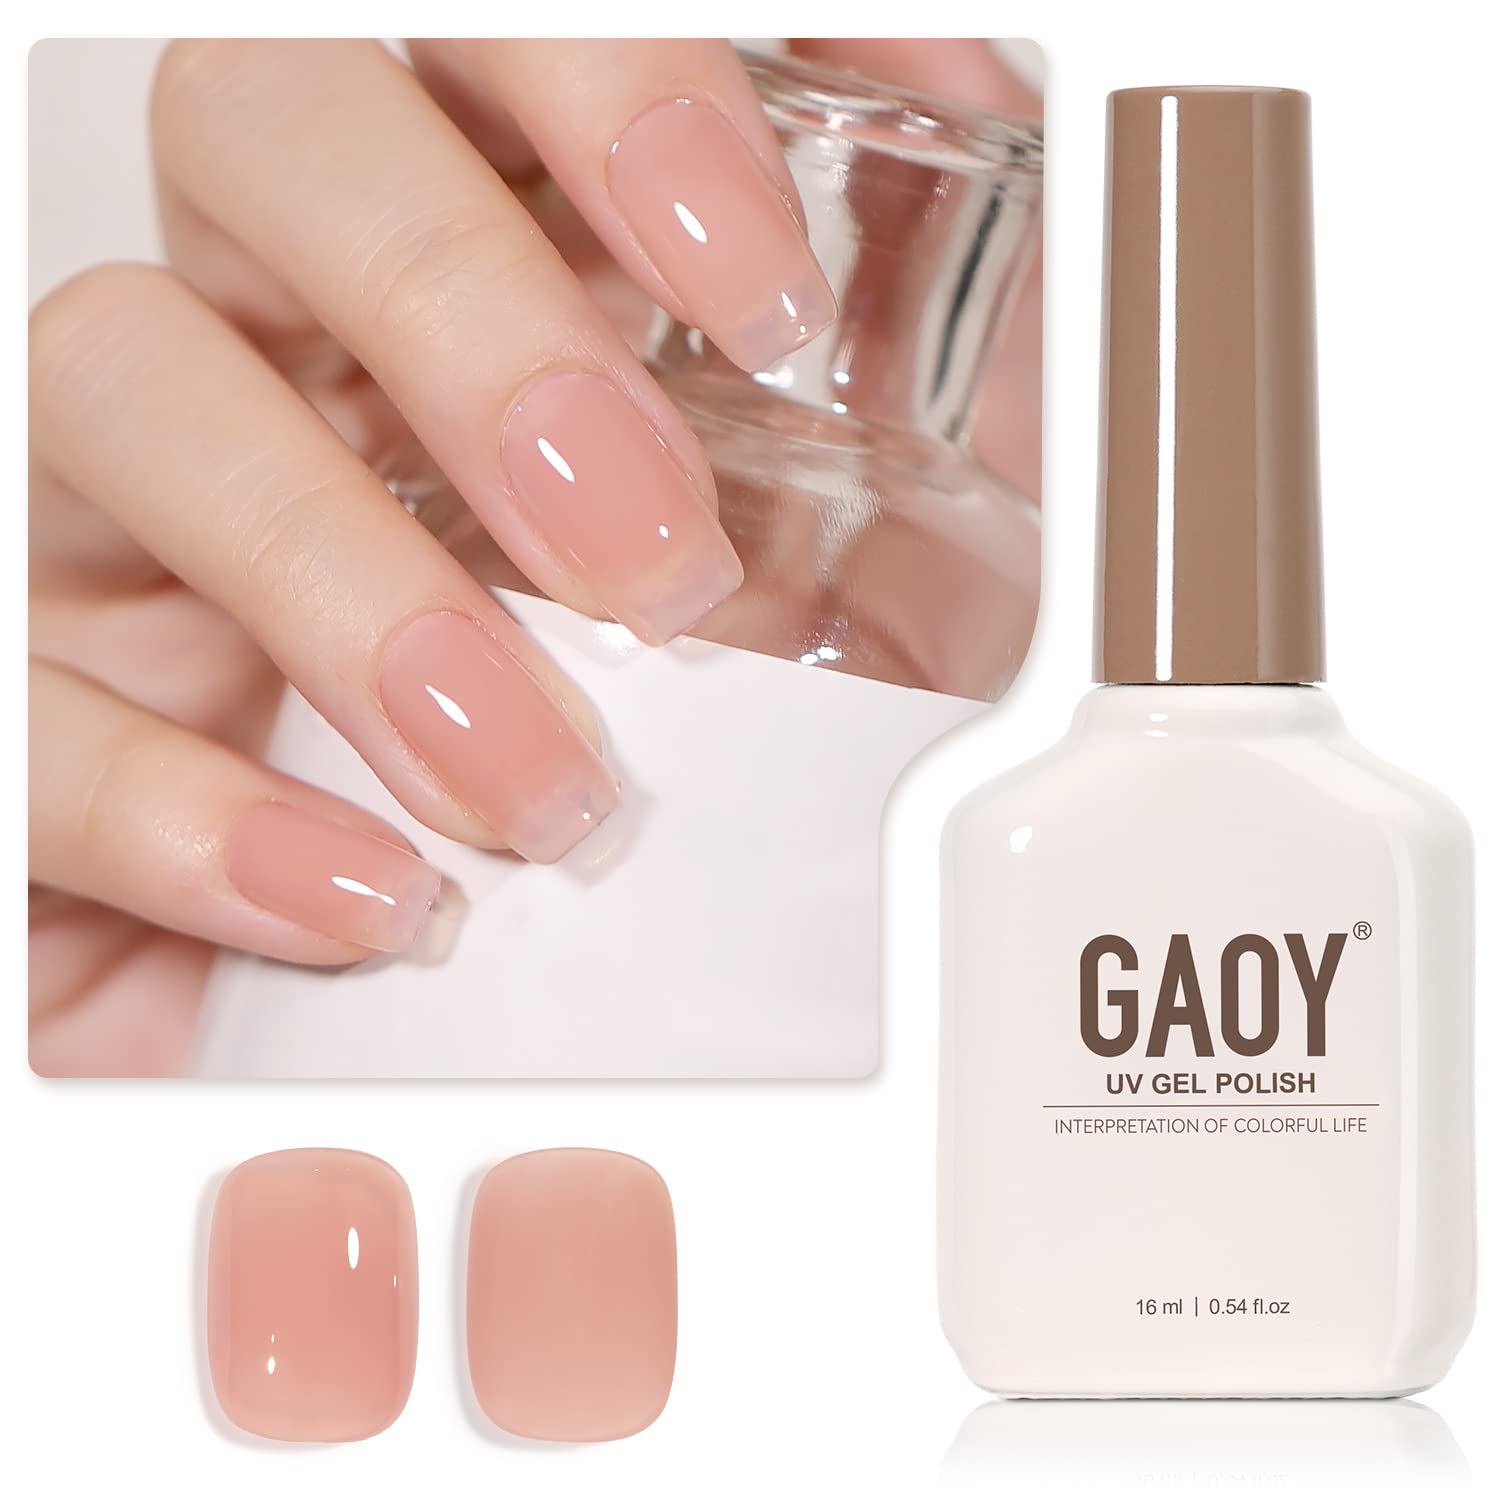 GAOY Sheer Nude Gel Nail Polish, 16ml Jelly Natural Pink ...